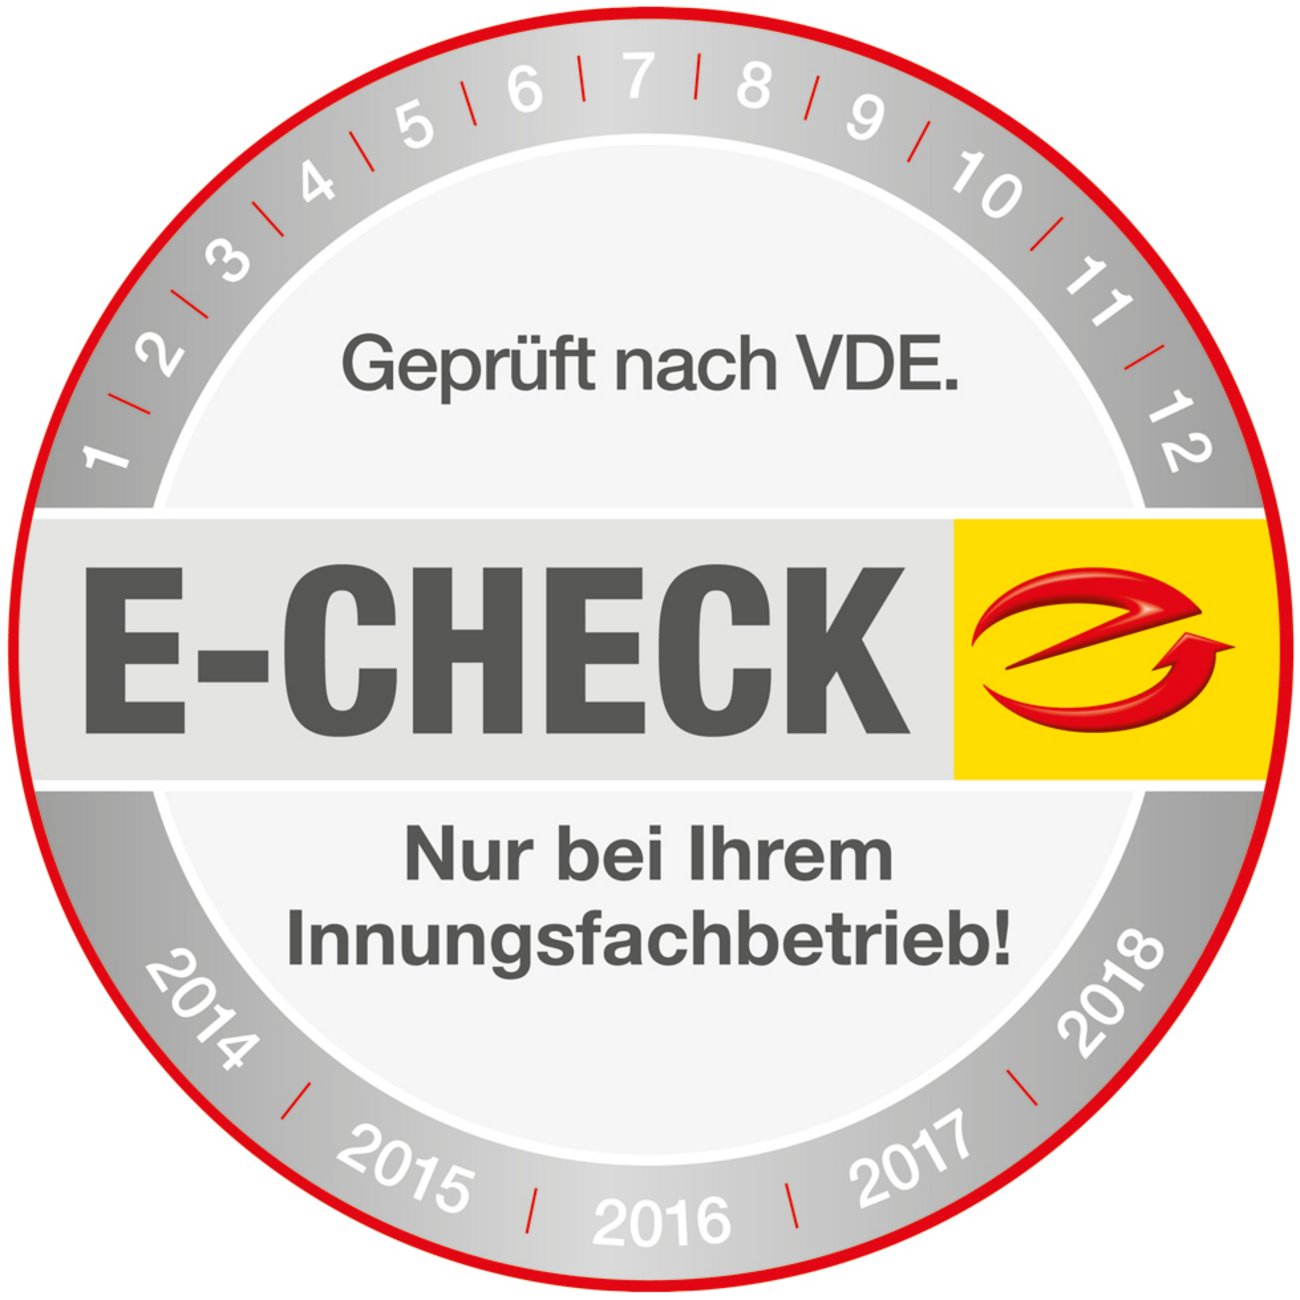 Der E-Check bei Völker Elektrotechnik in Karlstadt am Main